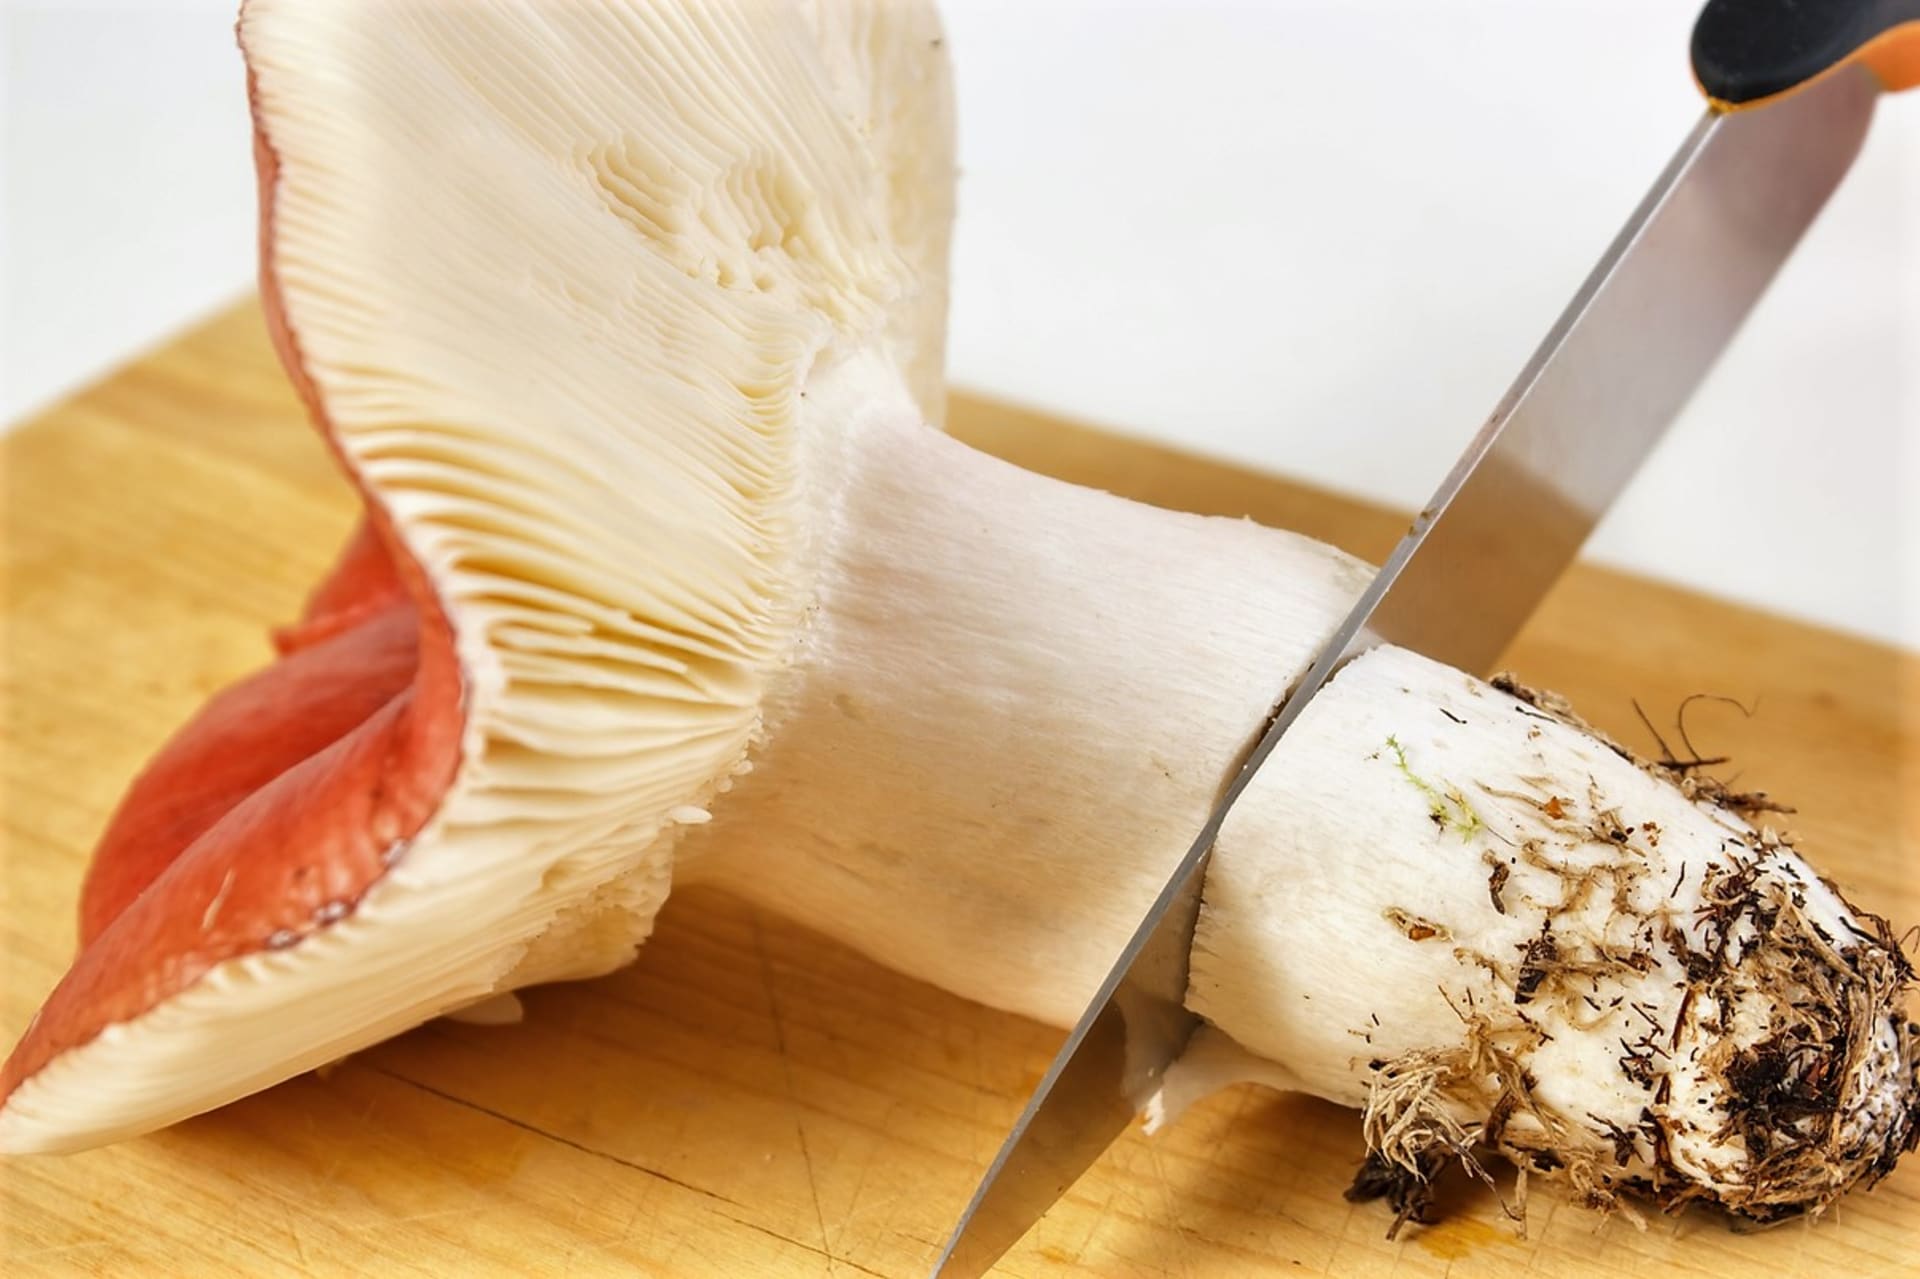 Holubinky: jejich využití v kuchyni je všestranné a některé druhy patří dokonce k nejchutnějším houbám vůbec